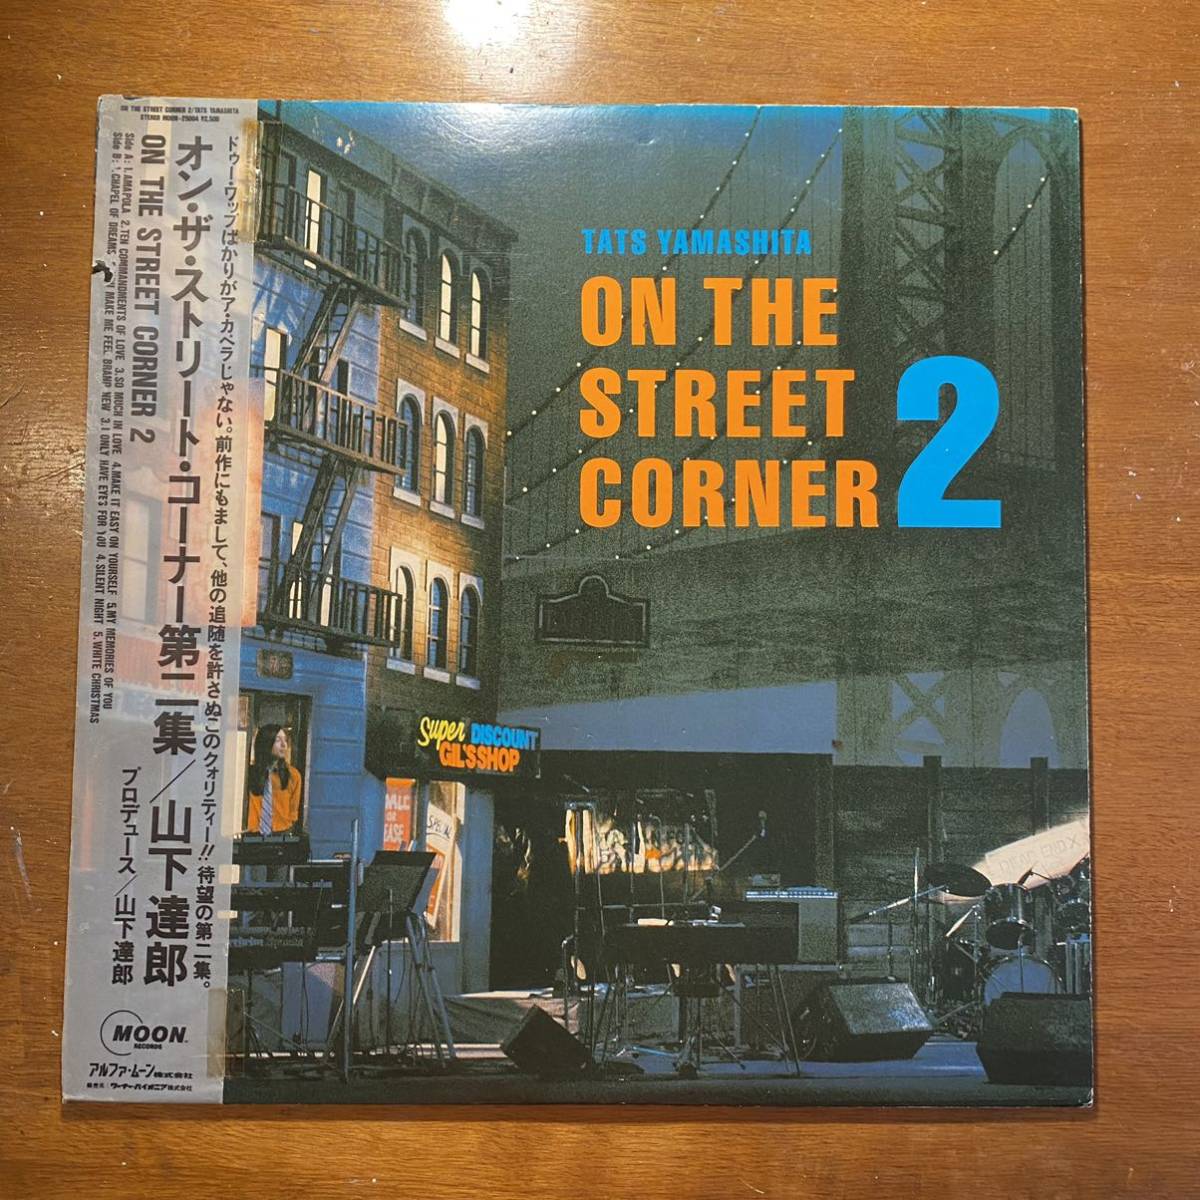 山下達郎 ON THE STREET CORNER2 オン・ザ・ストリート・コーナー第二集 MOON-25004 帯付 LP レコード 邦楽 J-POP シティポップ ポップス_画像1